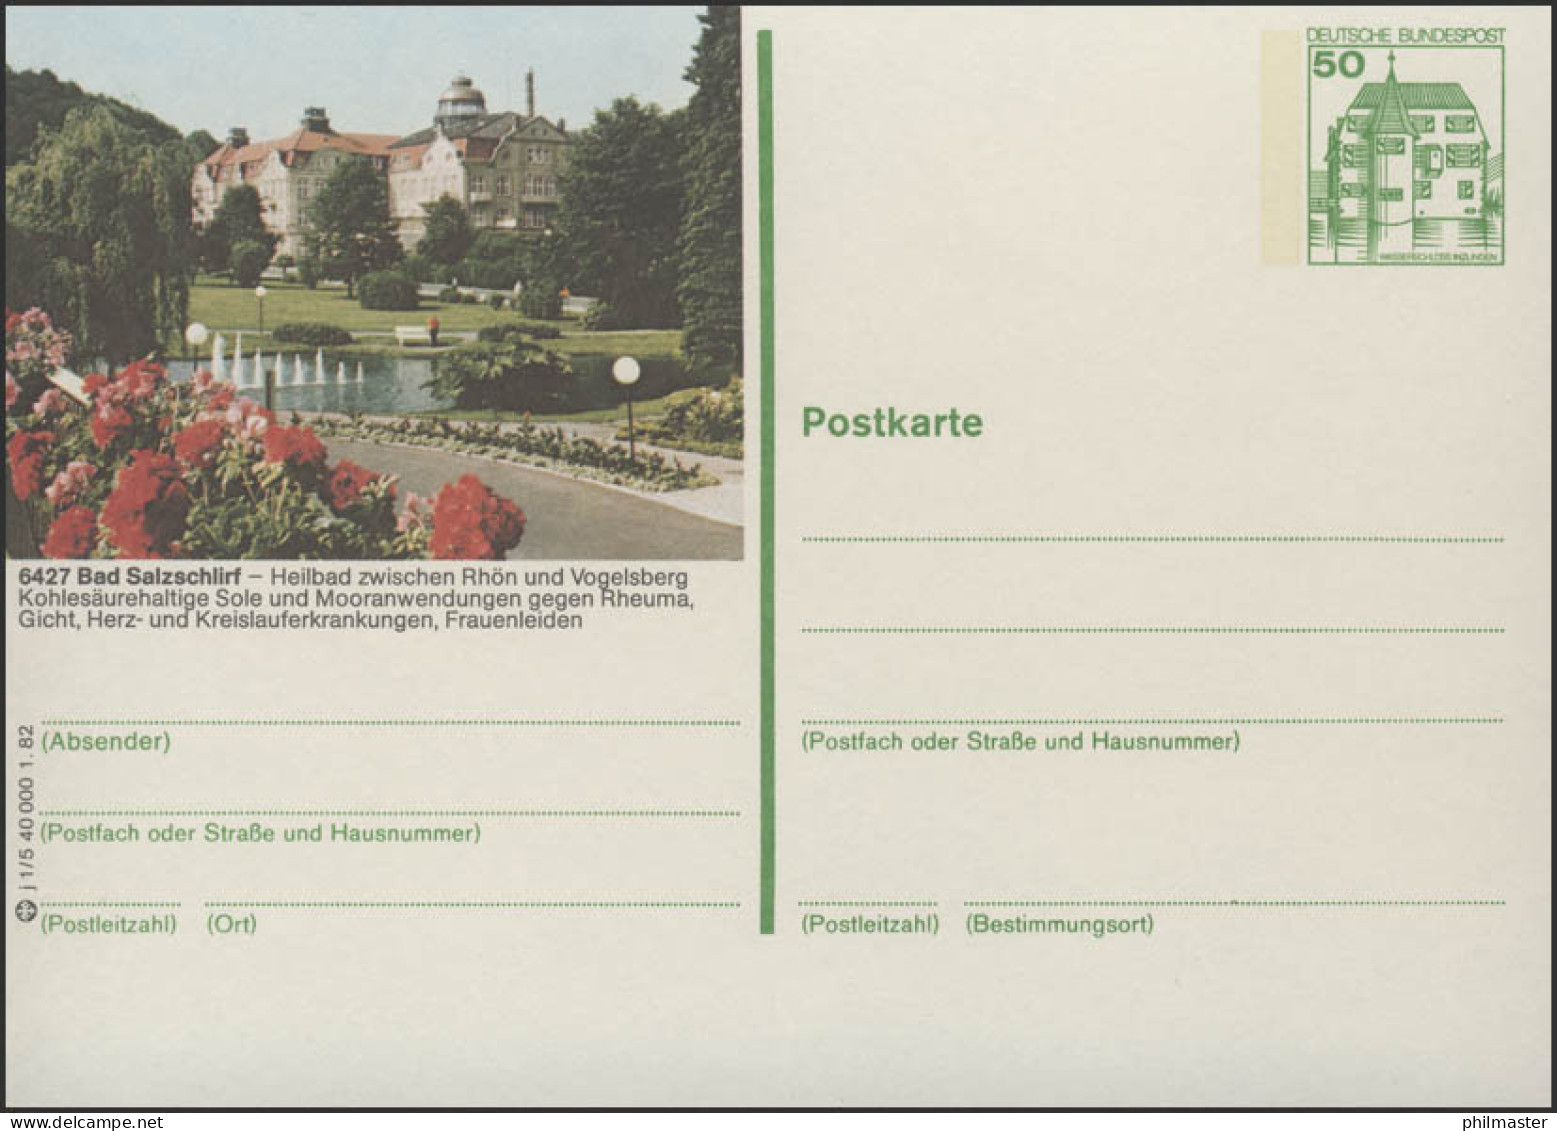 P134-j1/005 - 6427 Bad Salzschlirf, Hotel Badehof ** - Bildpostkarten - Ungebraucht